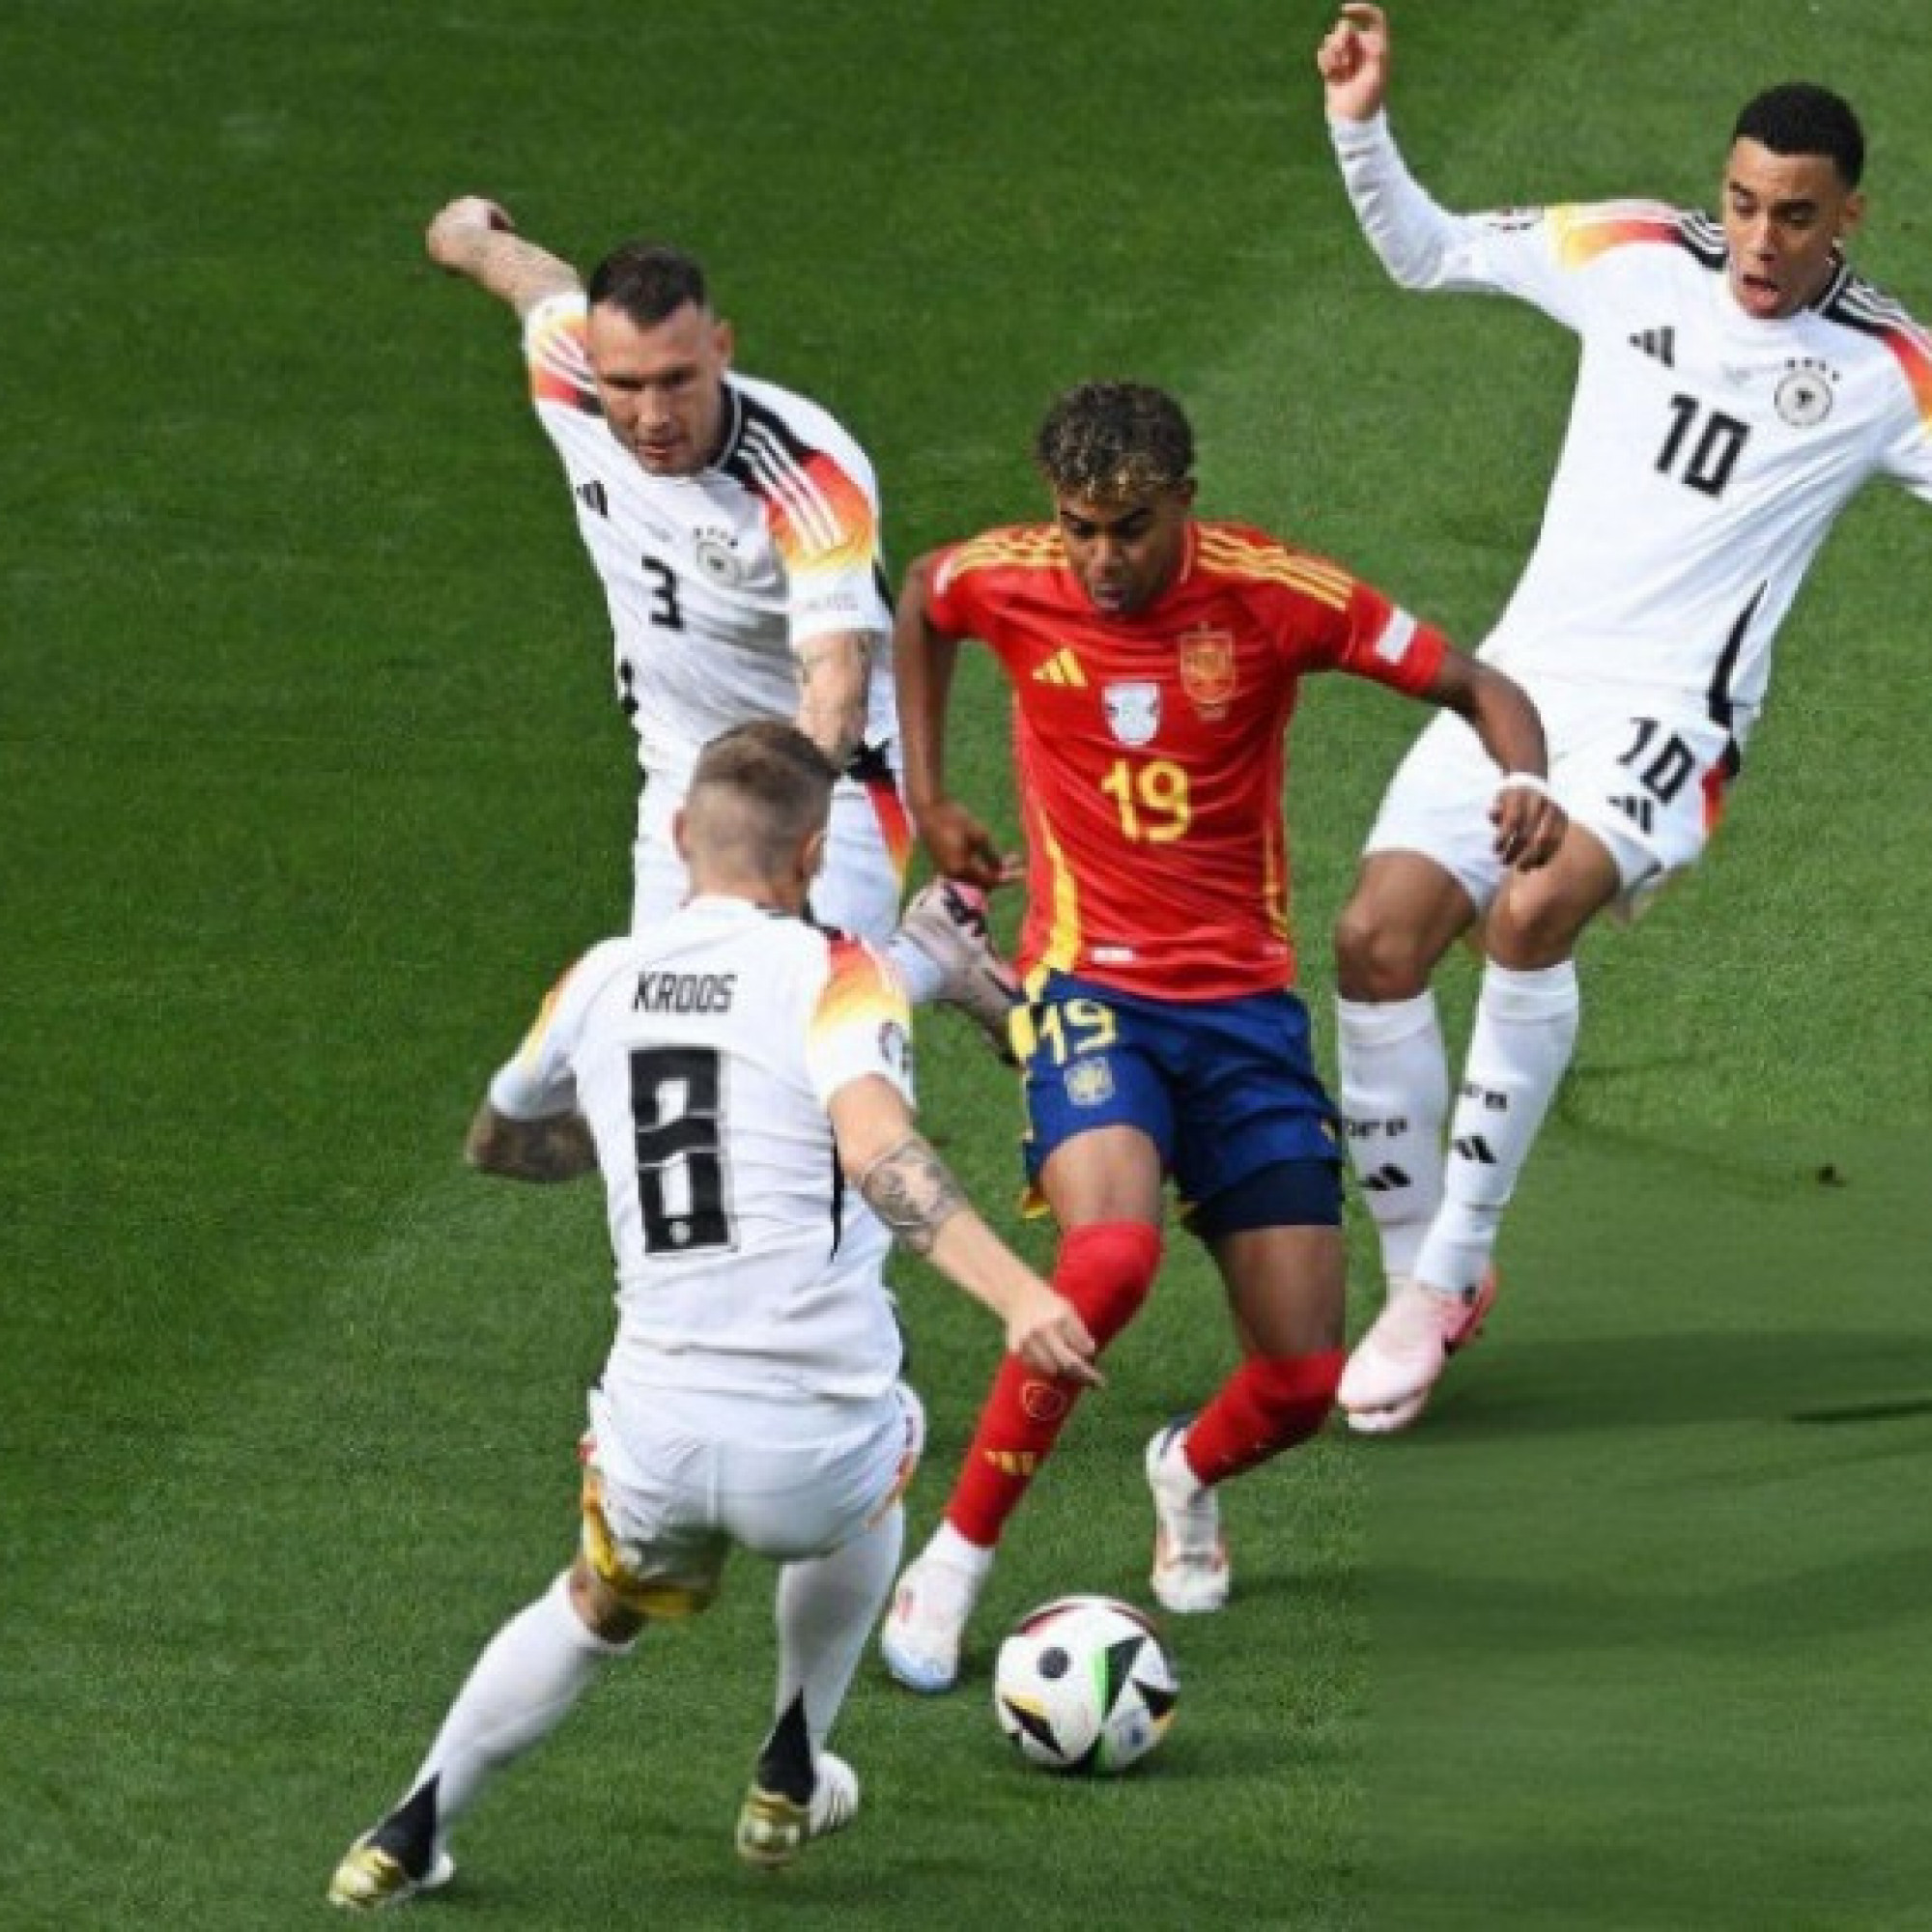  - Trực tiếp bóng đá Tây Ban Nha - Đức: Cơ hội tới tấp, tốc độ chóng mặt (EURO)